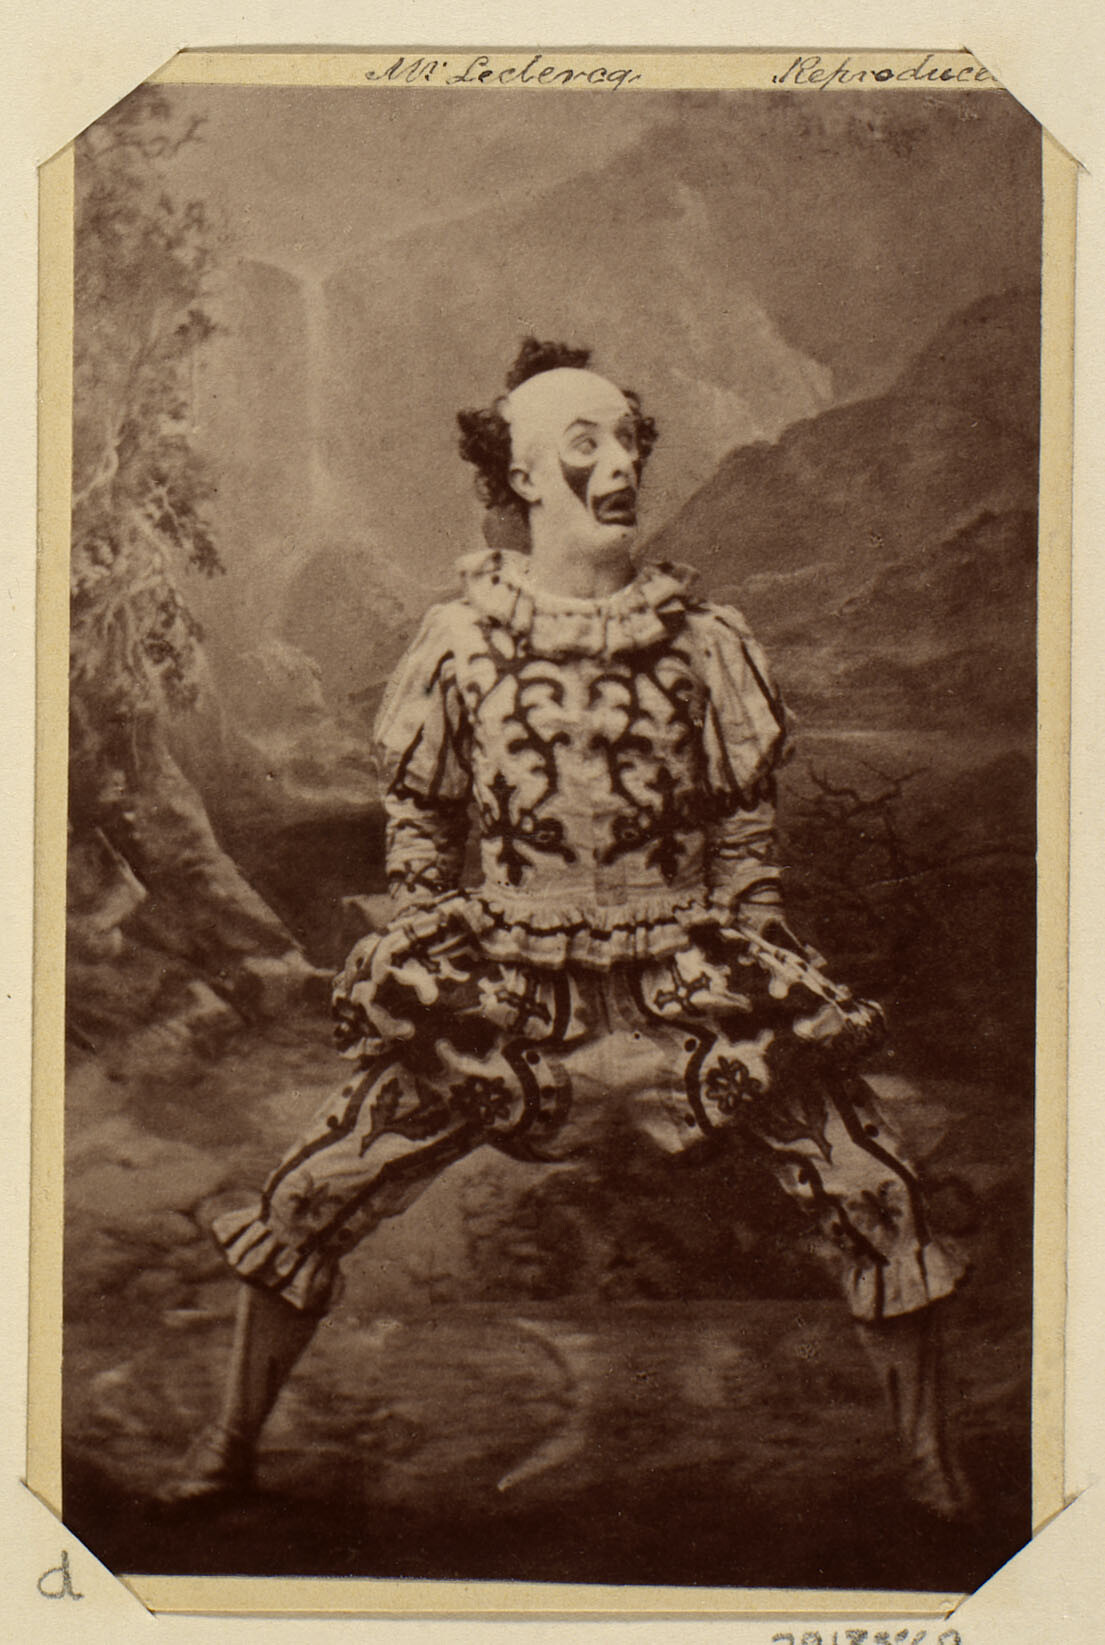 Господин Леклерк в костюме арлекина или клоуна, 1860